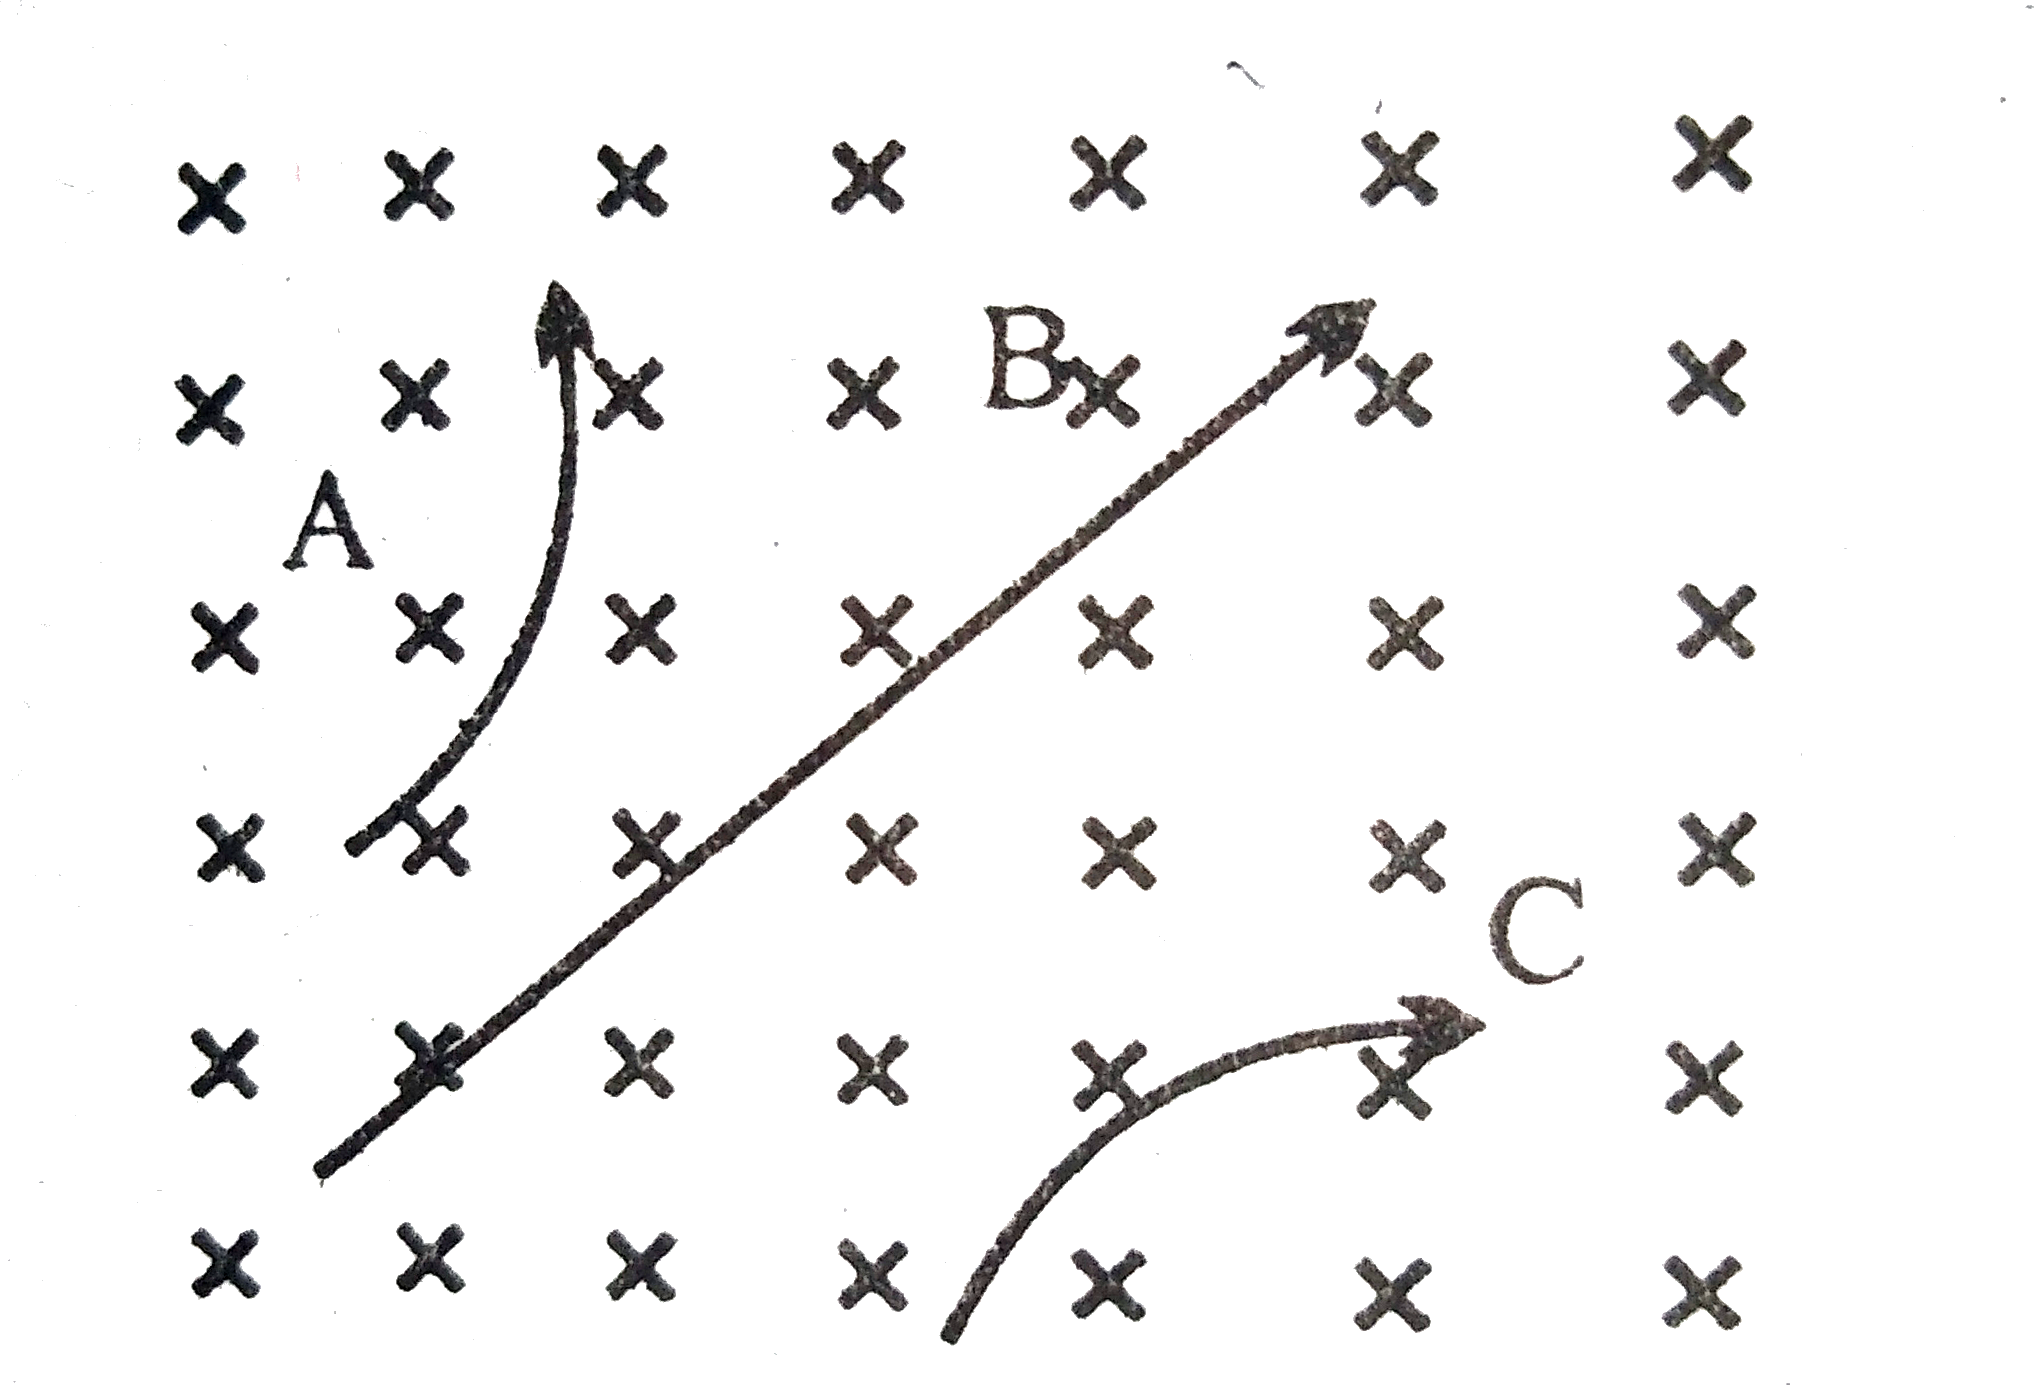 चित्र में एकसमान चुंबकीय क्षेत्र को (X) के द्वारा प्रदर्शित किया गया है यह क्षेत्र कागज के तल के लंबवत नीचे की ओर कार्य करता है। इस क्षेत्र में A, B और C तीन कणों के पथ प्रदर्शित हैं। बताइए किस कण पर कौन-सा आवेश है?